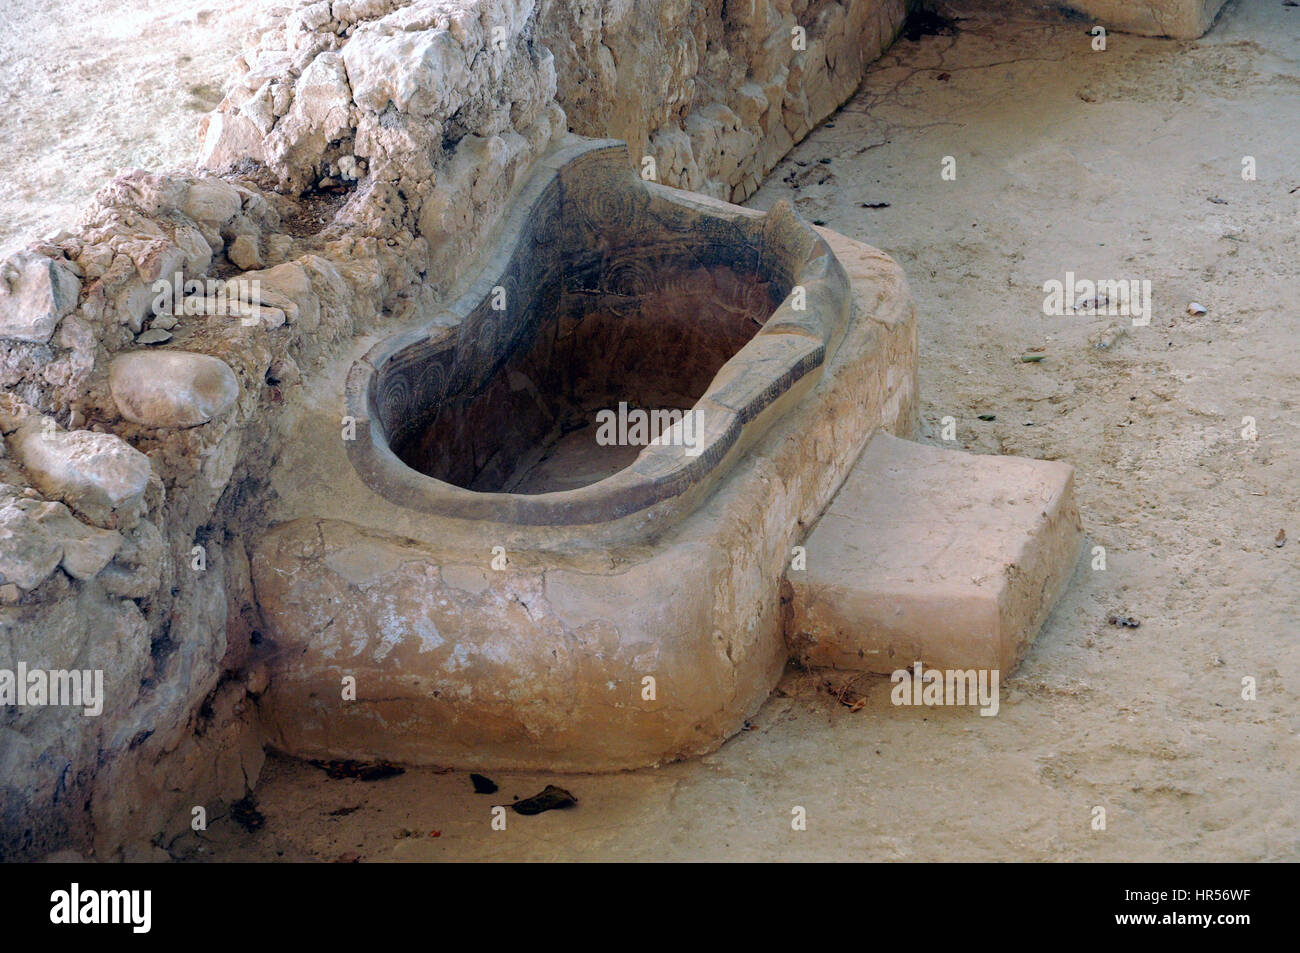 Le bain du palais de Nestor, accorning où à Homère, Polycaste, fille du roi Nestor baigné Télémaque, fils d'Ulysse. Banque D'Images